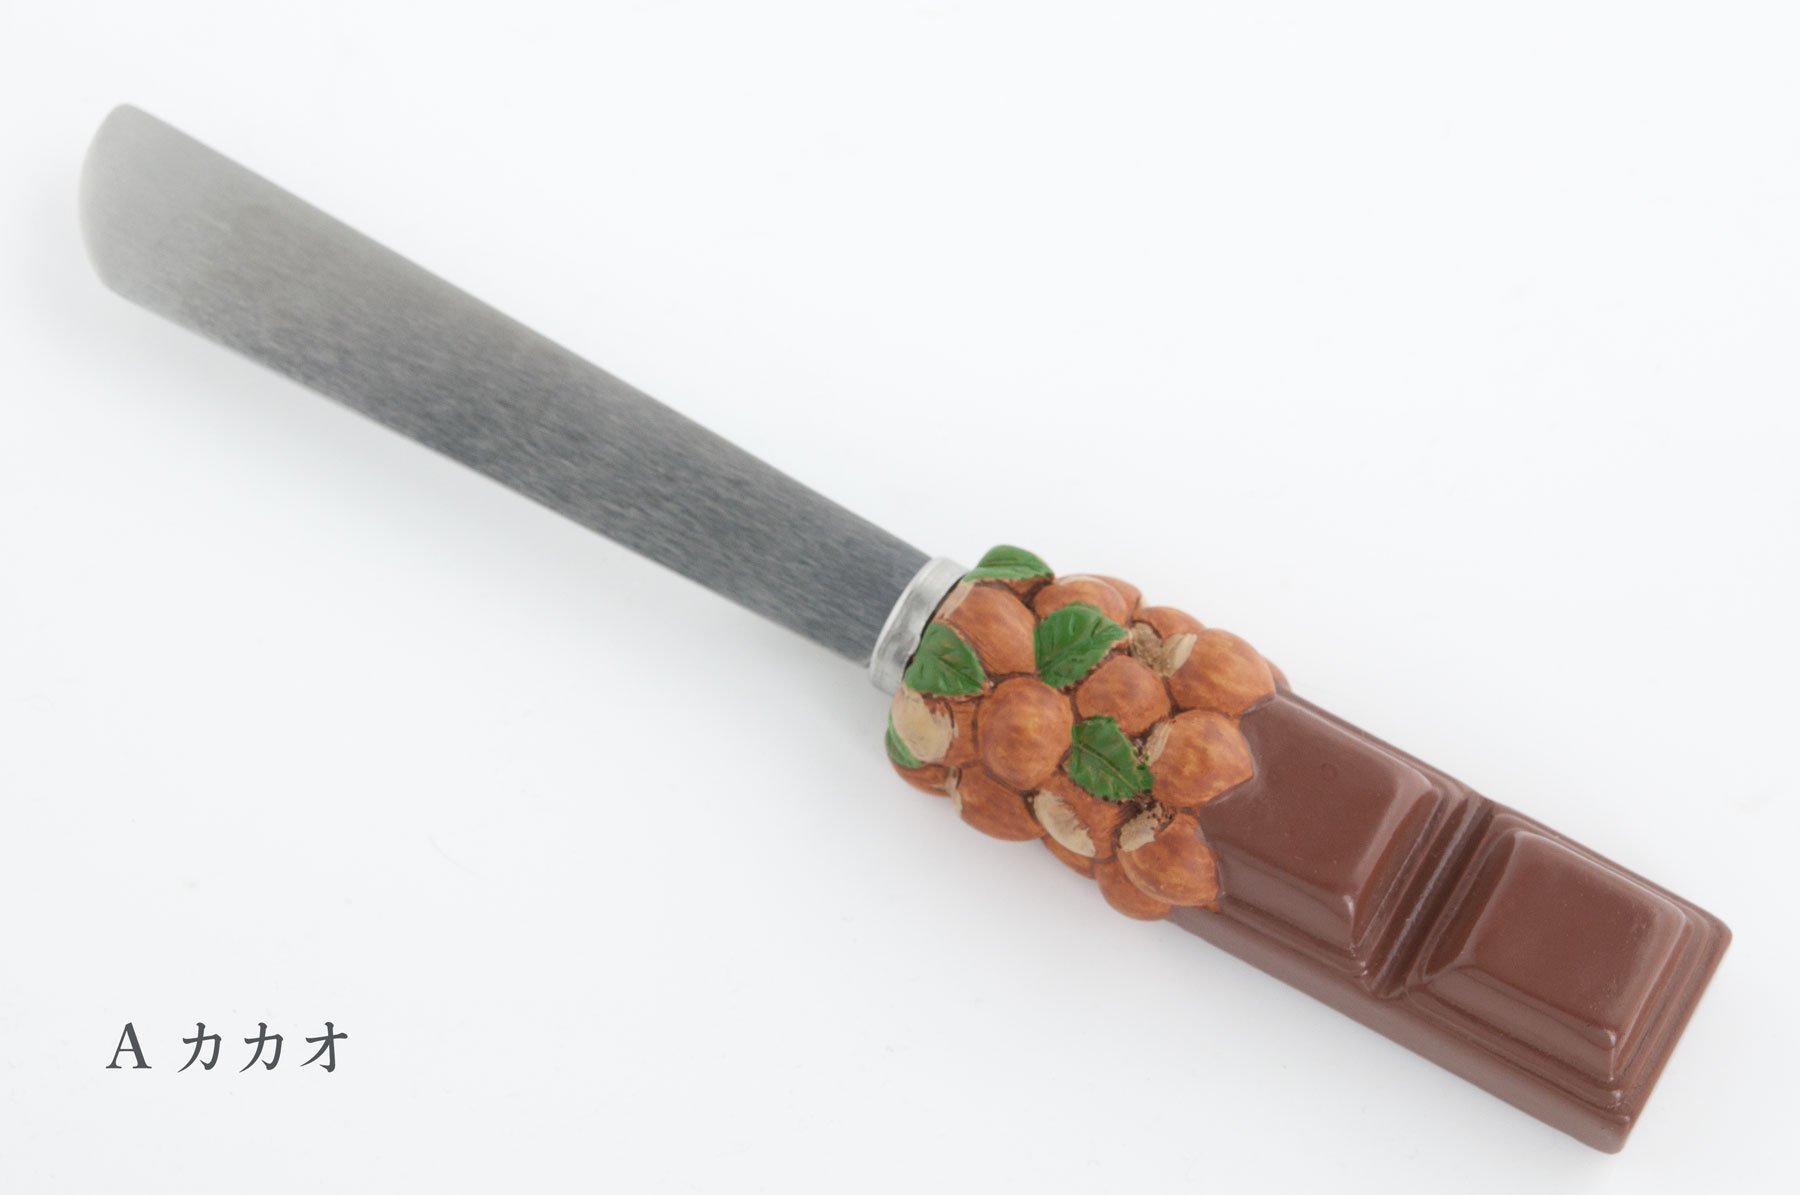 チョコレート用ナイフ